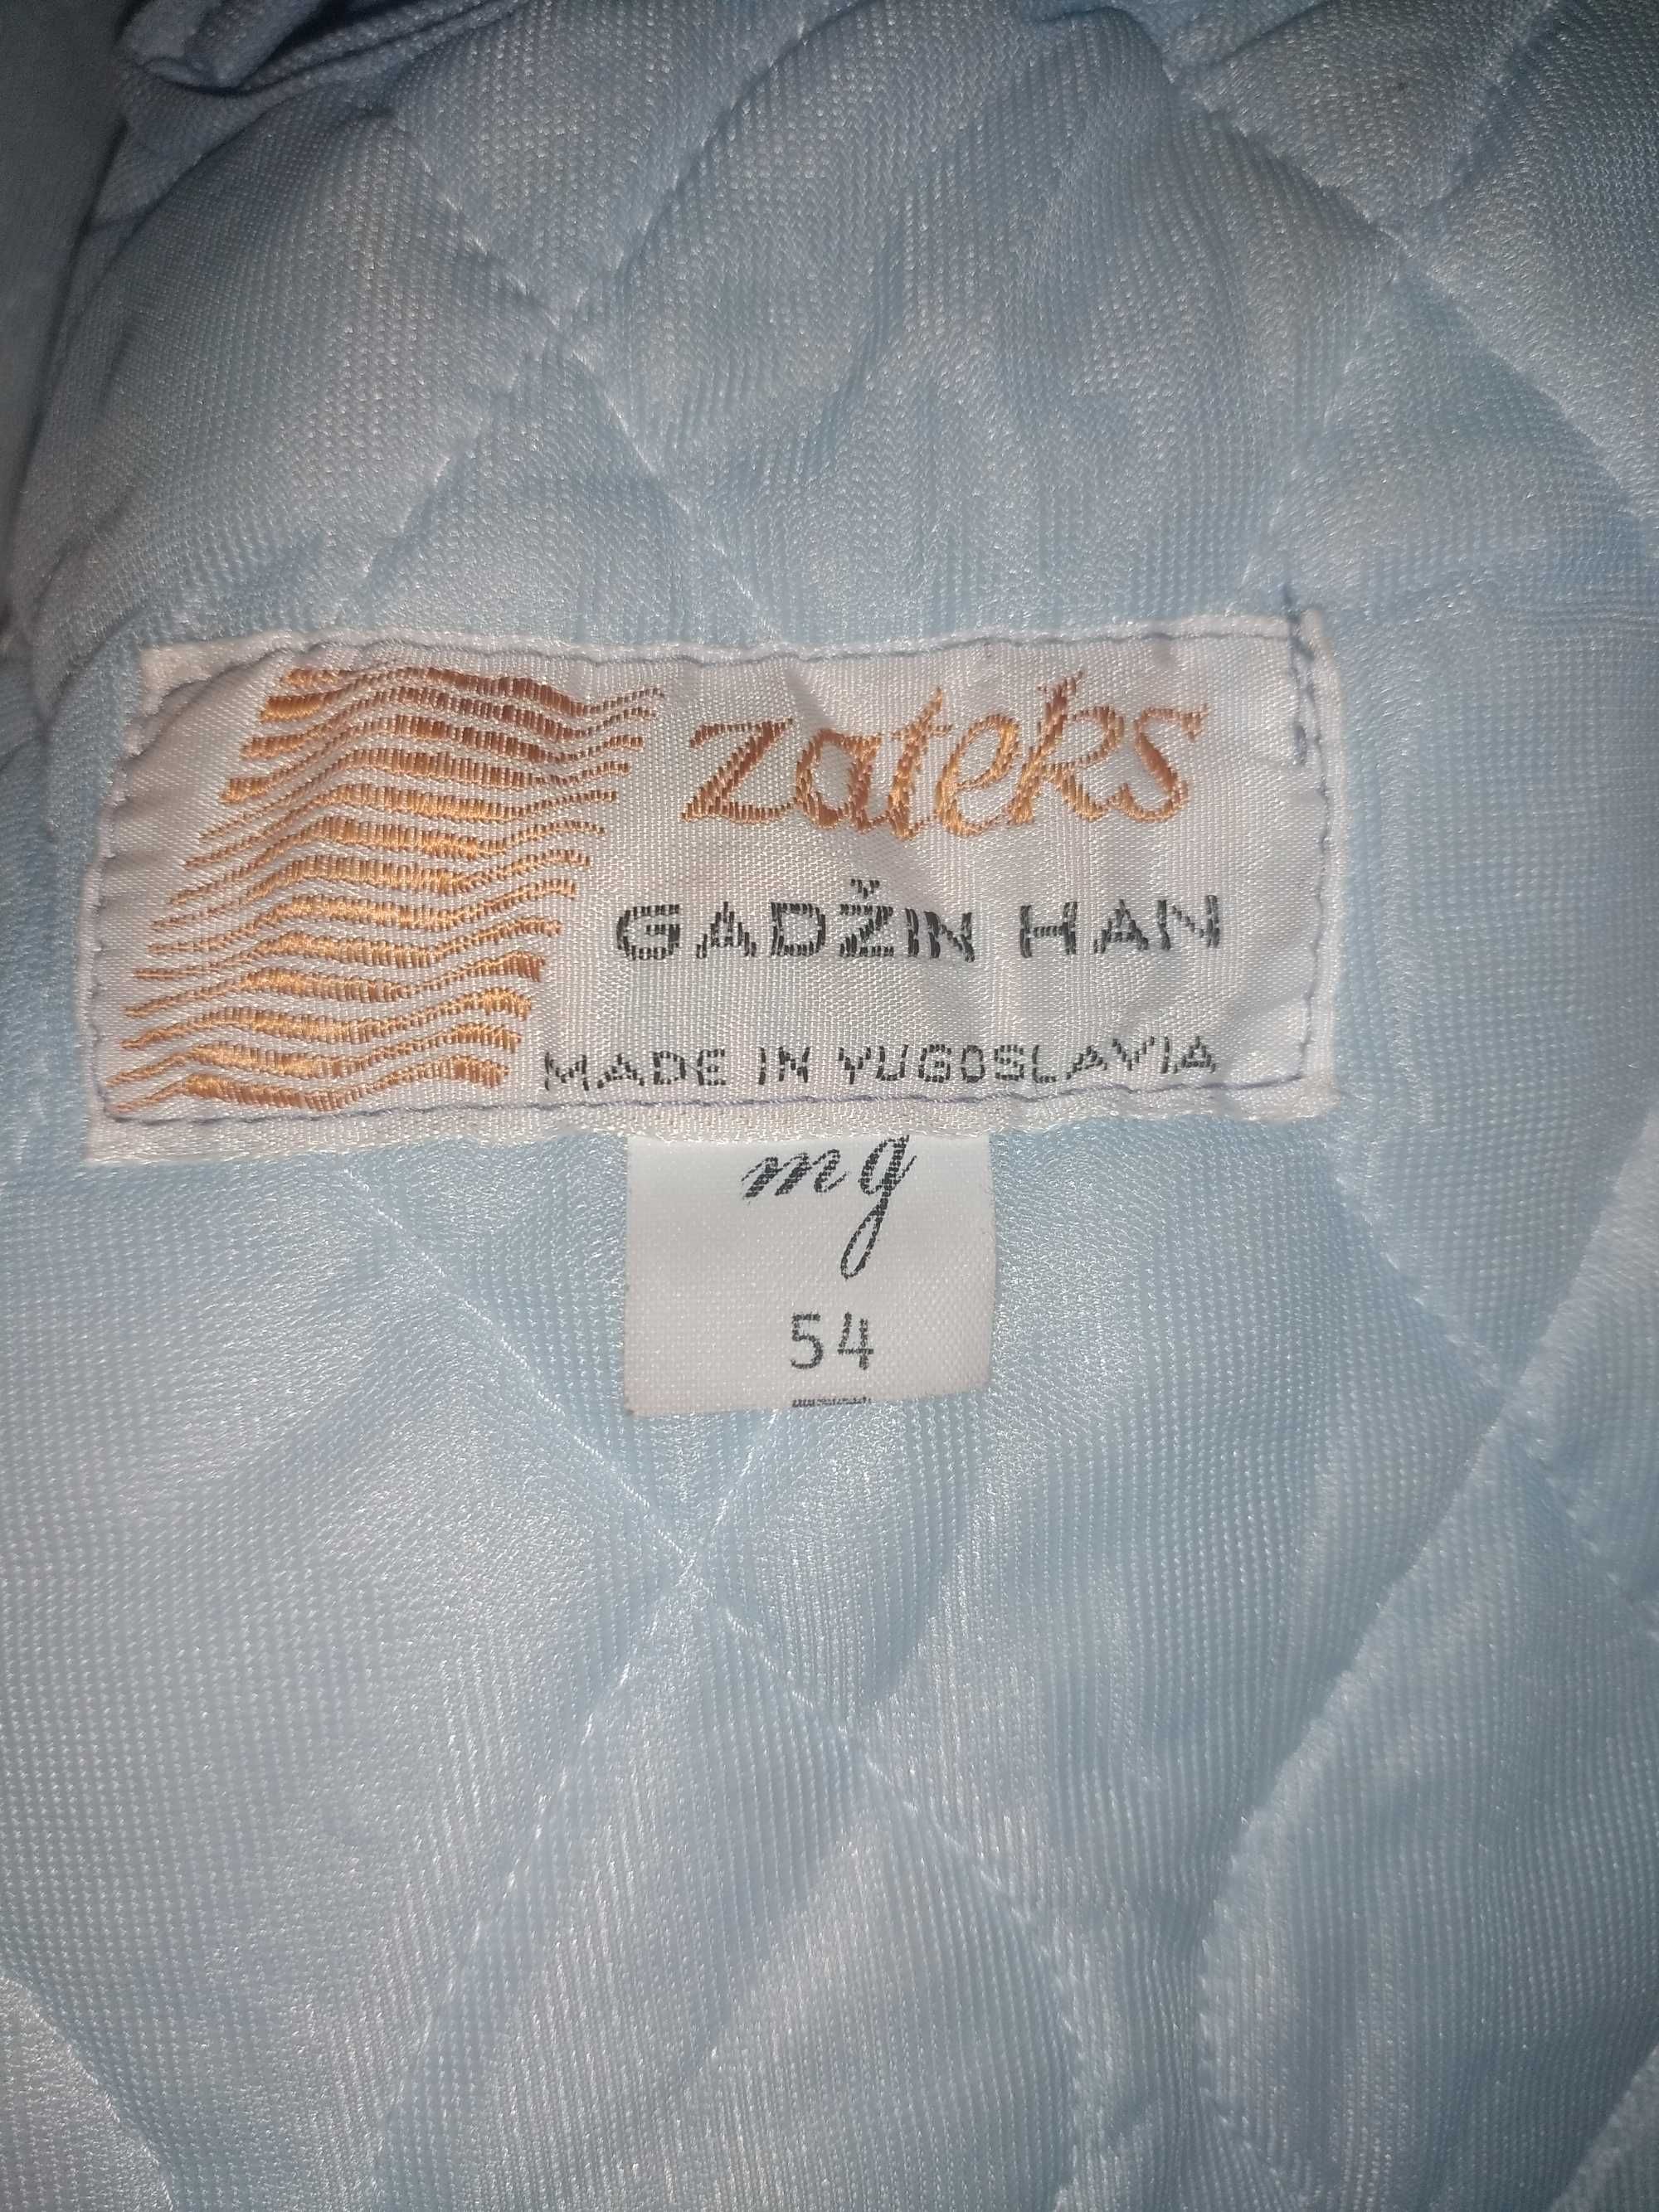 Куртка мужская производство Югославия. 54 размер. Новая